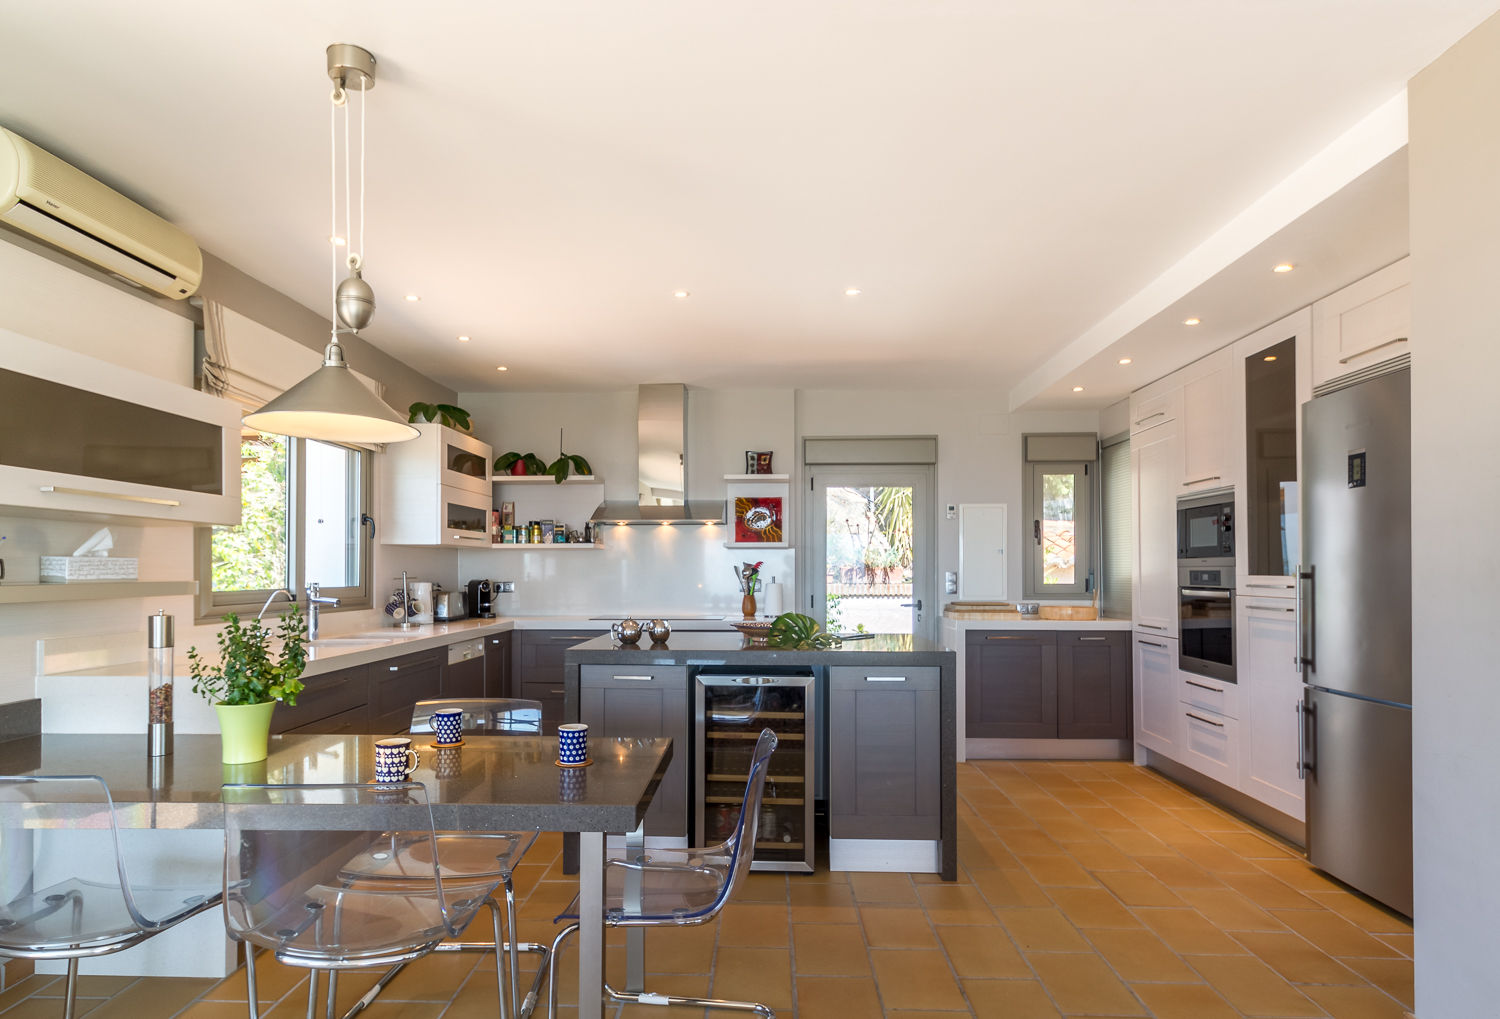 Cocina Home & Haus | Home Staging & Fotografía Cocinas de estilo mediterráneo homestaging,fotografía,cocina,espacios abiertos,islas de cocina,vistas,mirador,naranja